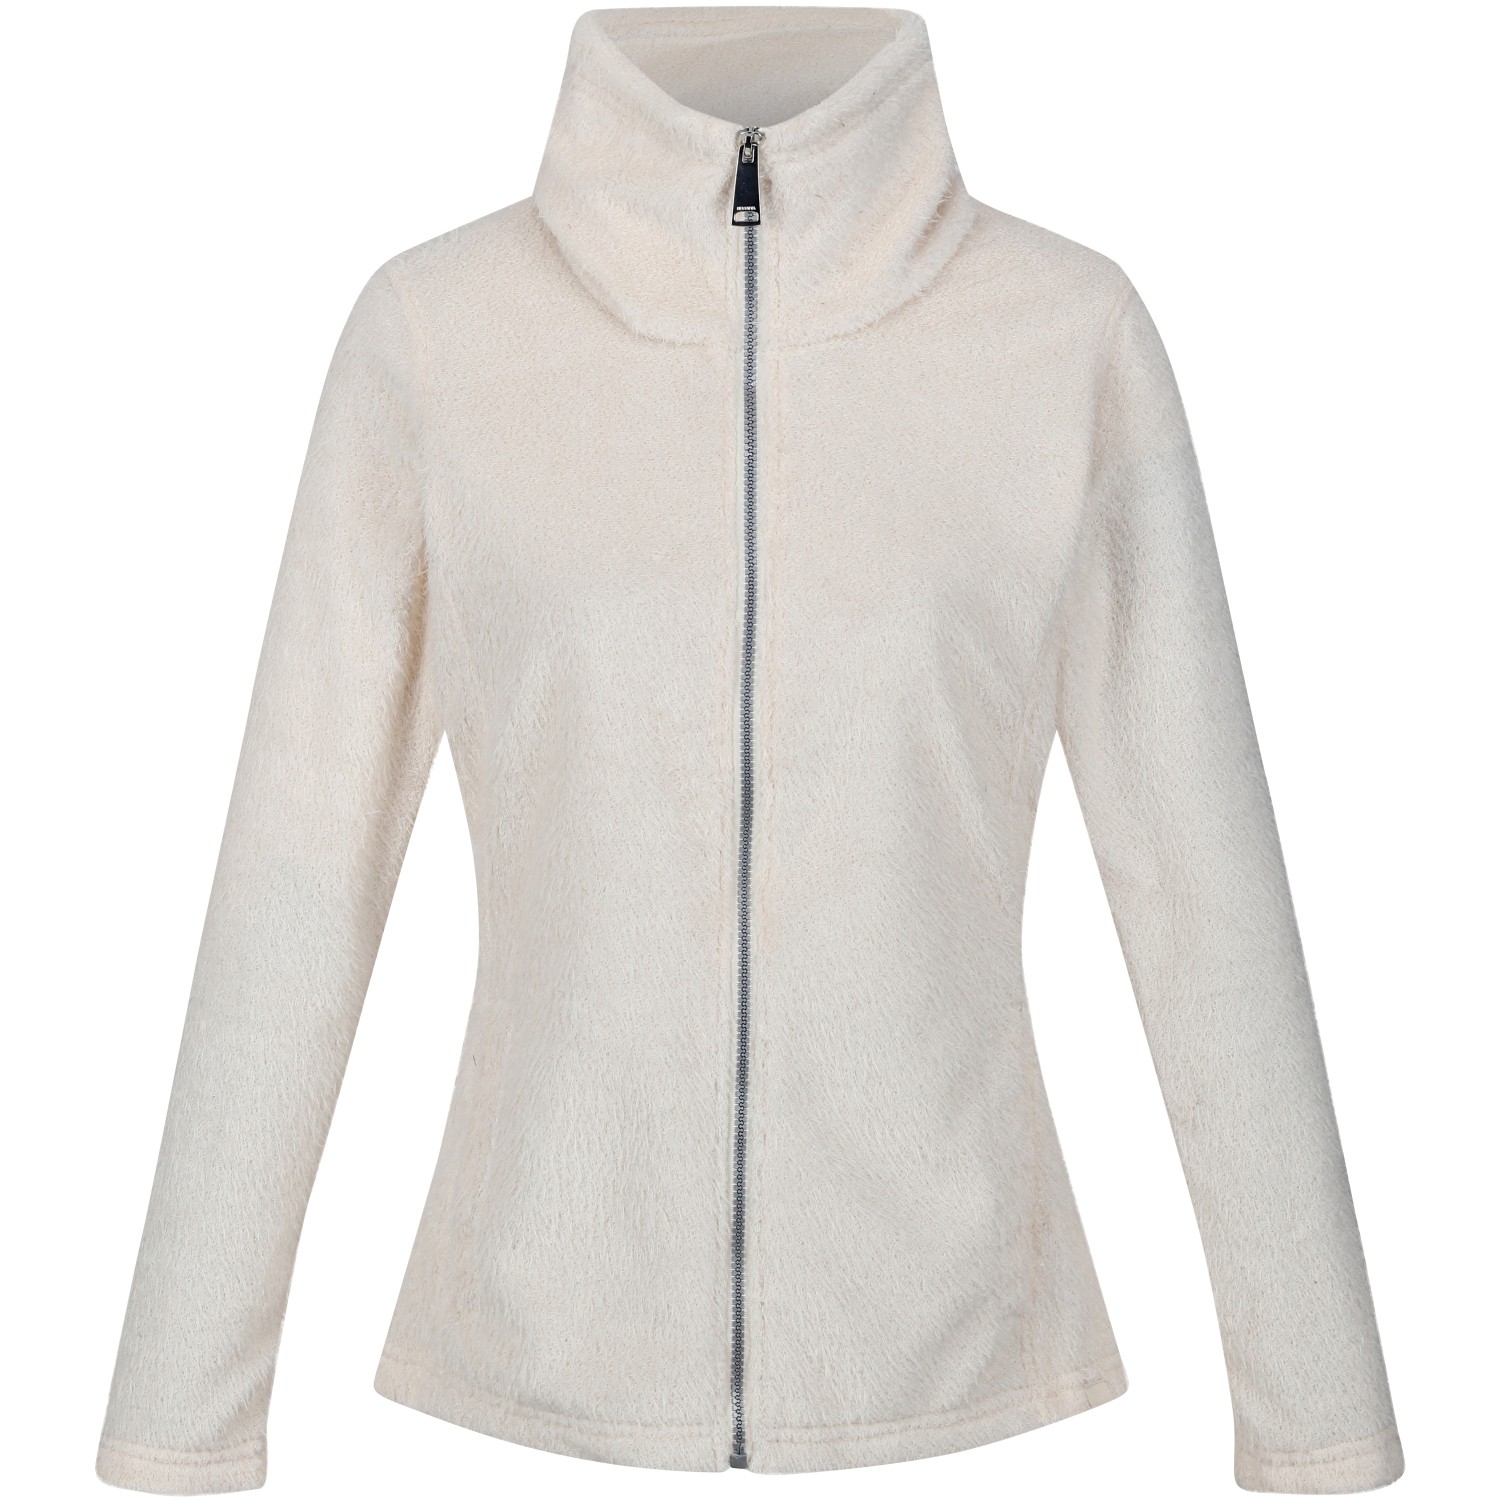 Regatta Women's Heloise fleece jacket (white) 